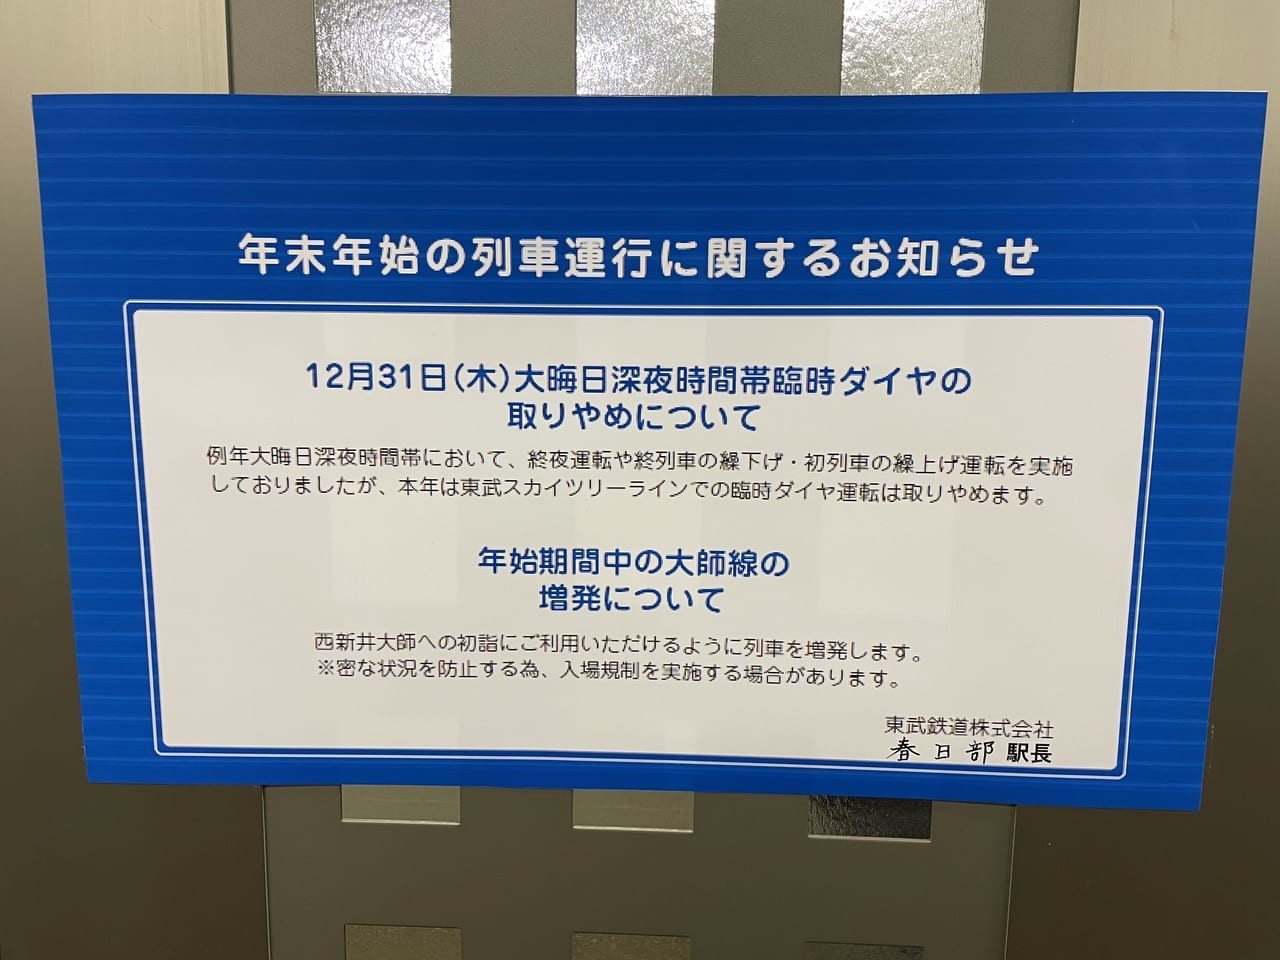 東武スカイツリーラインでの12月31日大晦日臨時ダイヤ運転は取りやめ